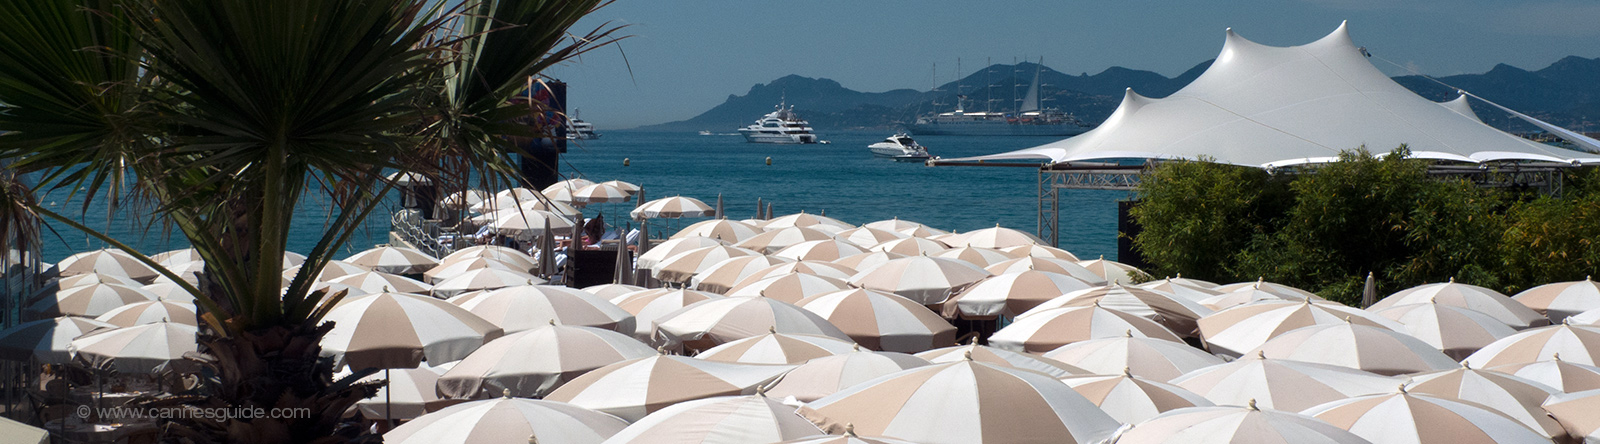 Beach umbrellas in Cannes